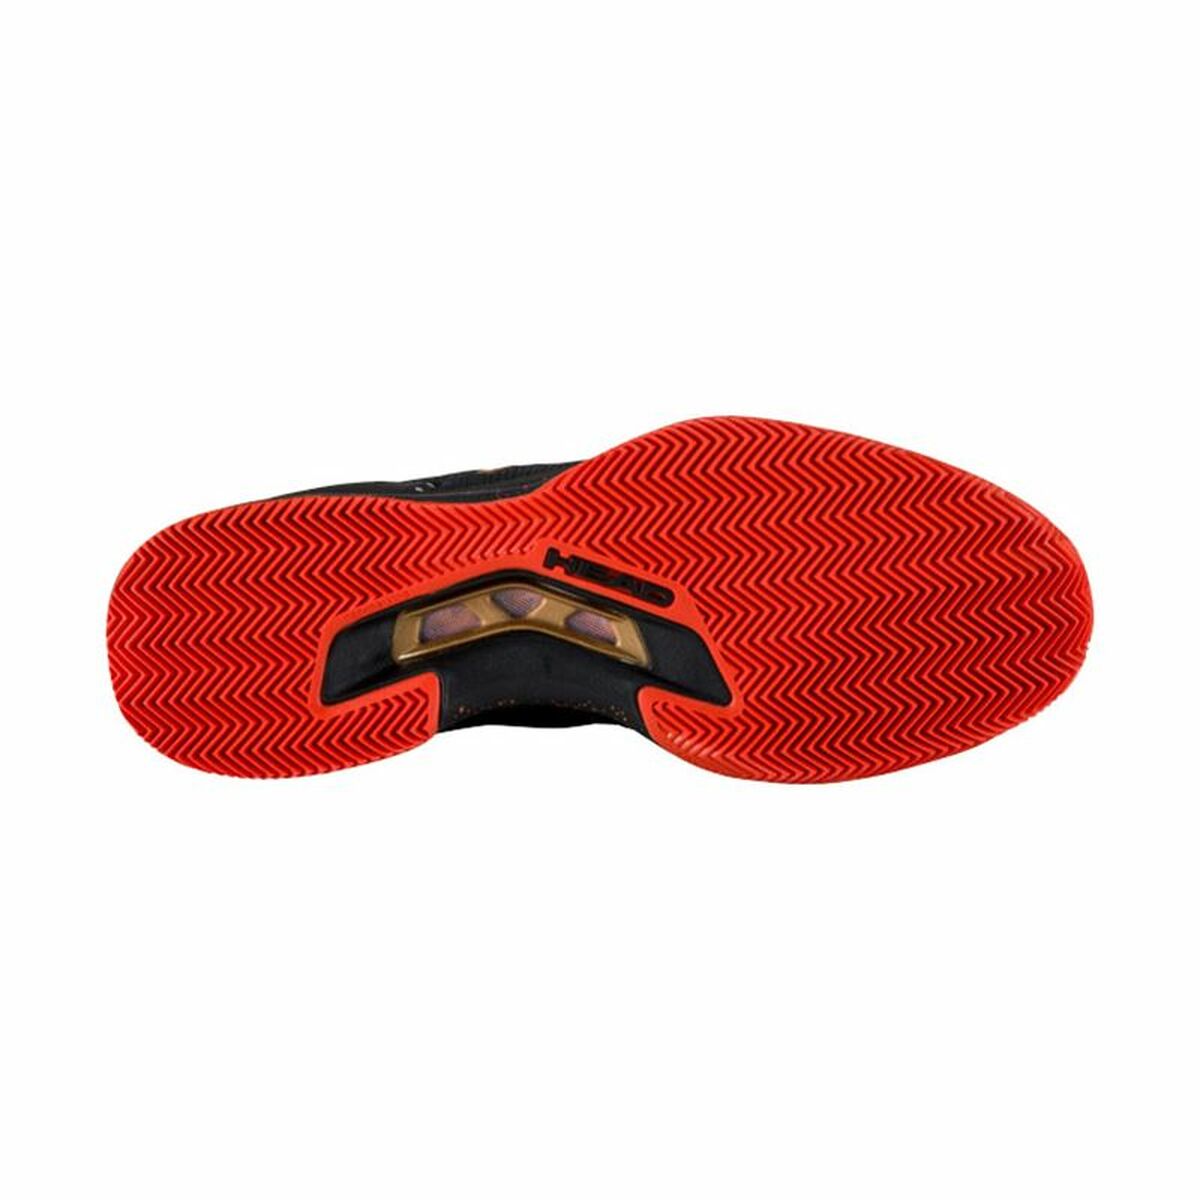 Zapatillas De Tenis Head Sprint Pro 3.5 Clay